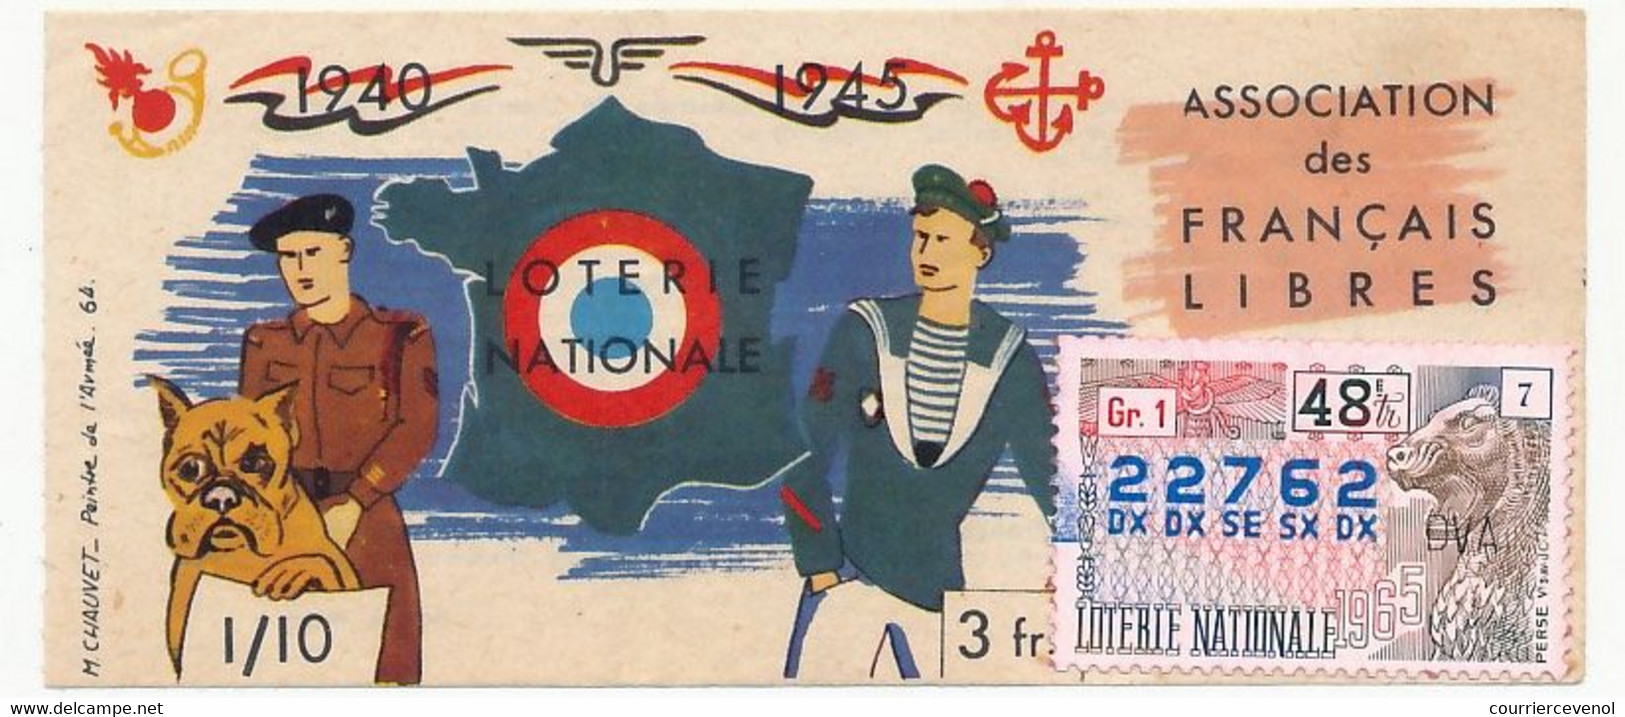 FRANCE - Loterie Nationale - Association Des Français Libres - 48eme Tranche - 1965 - Lotterielose